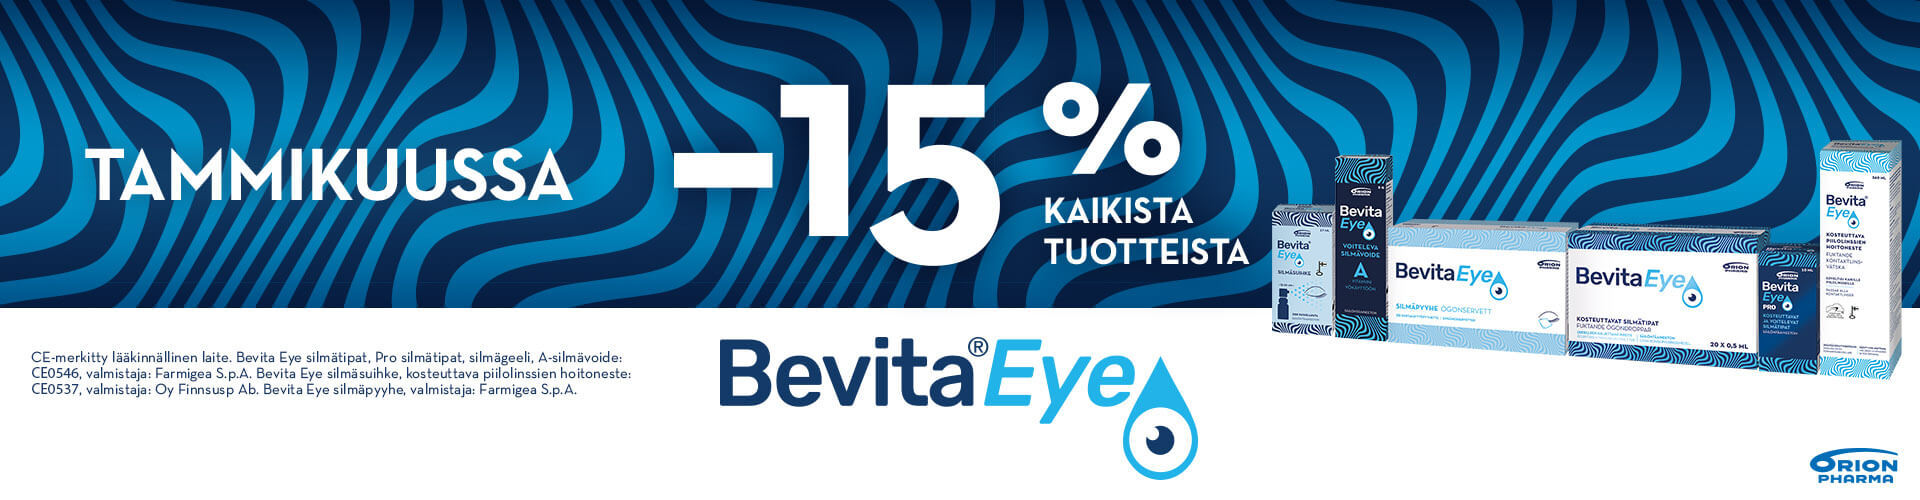 BevitaEye_tuotteet_-15%tarjous-tammikuu-2023